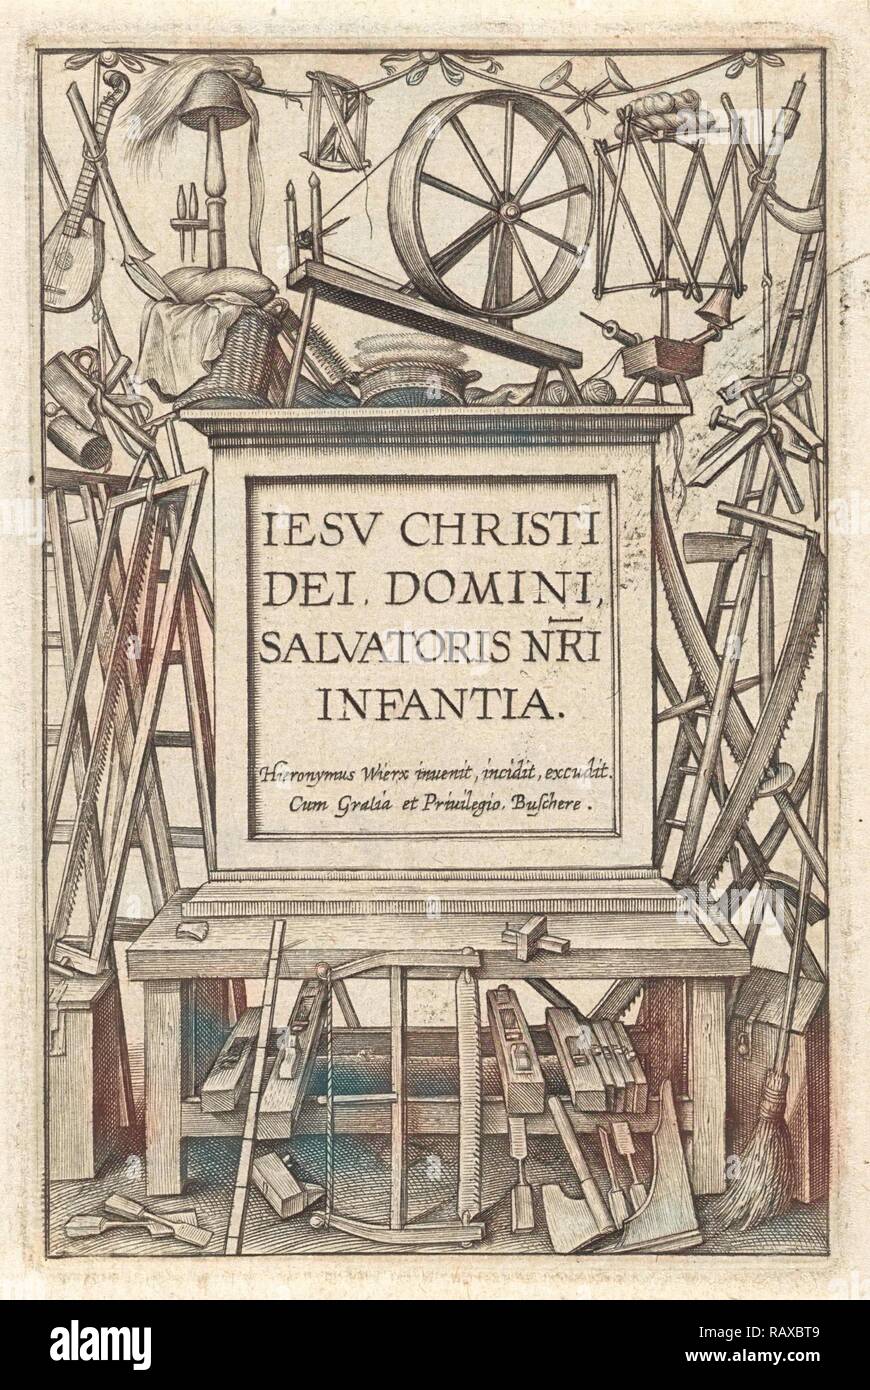 Banco di lavoro con strumenti, Hieronymus WIERIX, 1563 - prima del 1619. Reinventato da Gibon. Arte Classica con un tocco di moderno reinventato Foto Stock